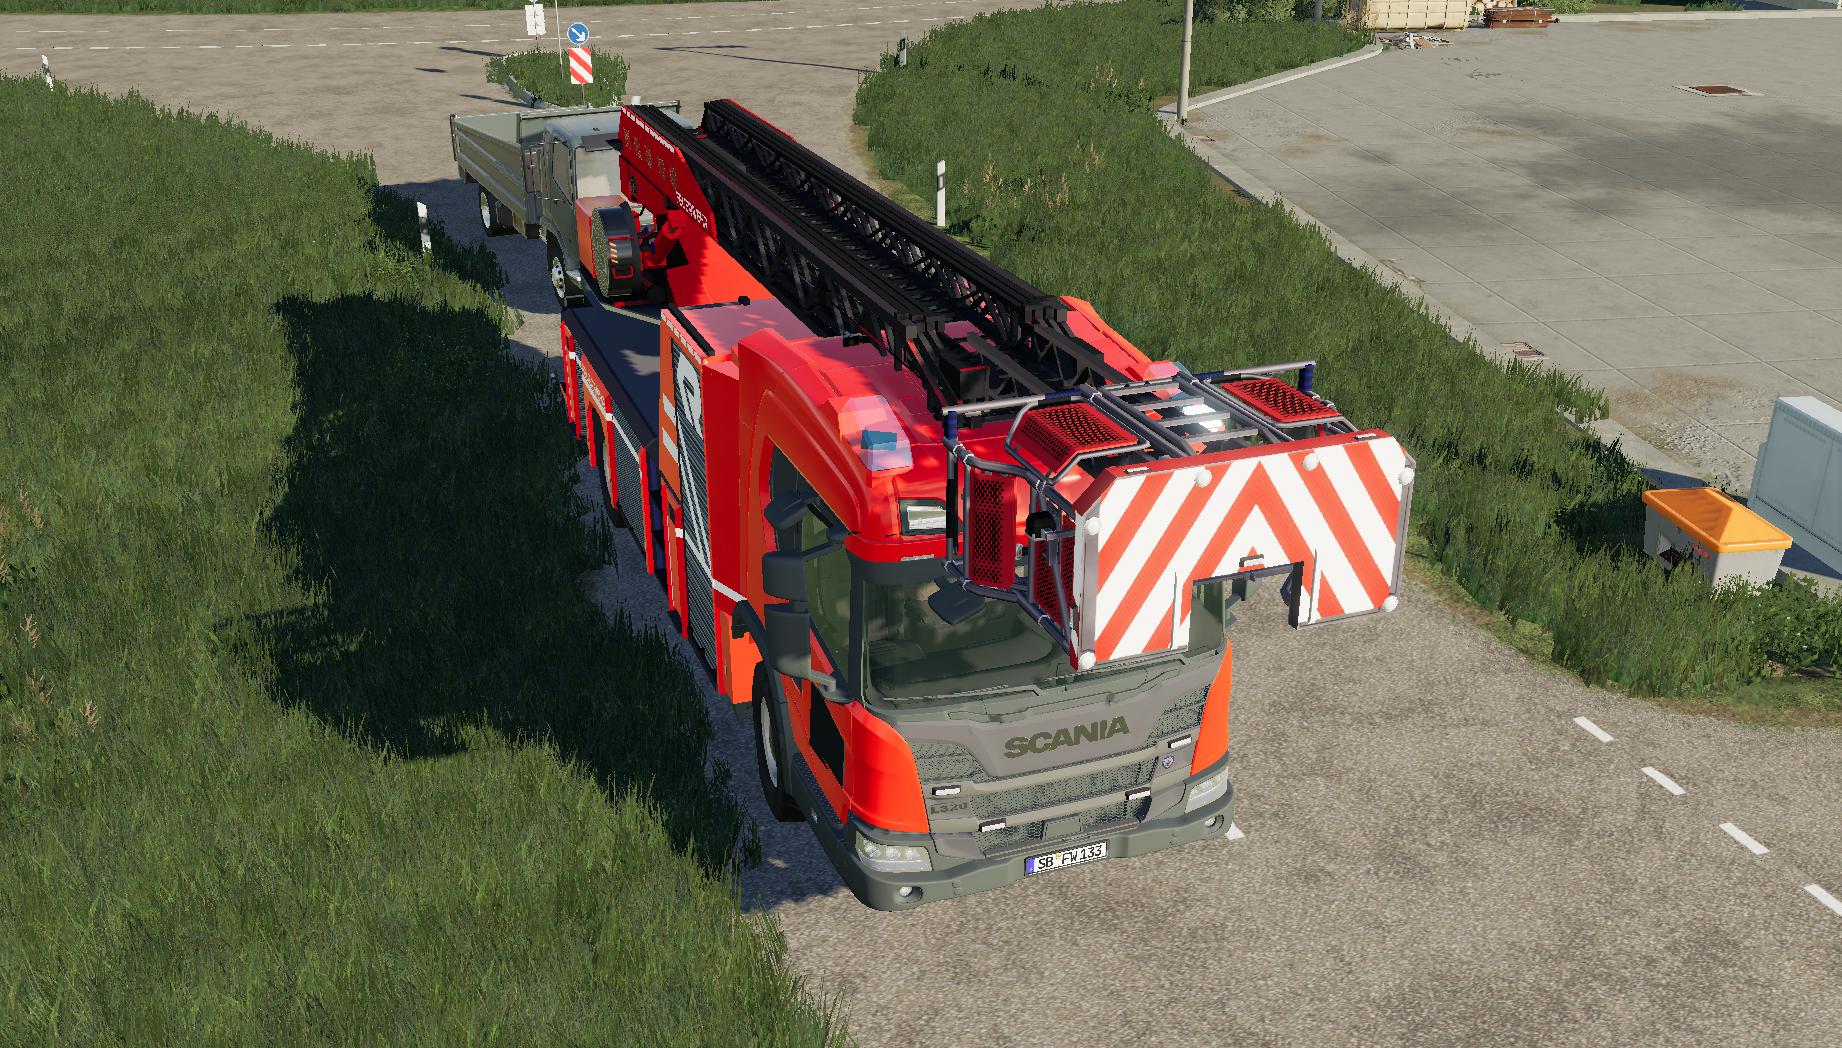 LS19,Fahrzeuge,Feuerwehr,,Scania XS30 DLK